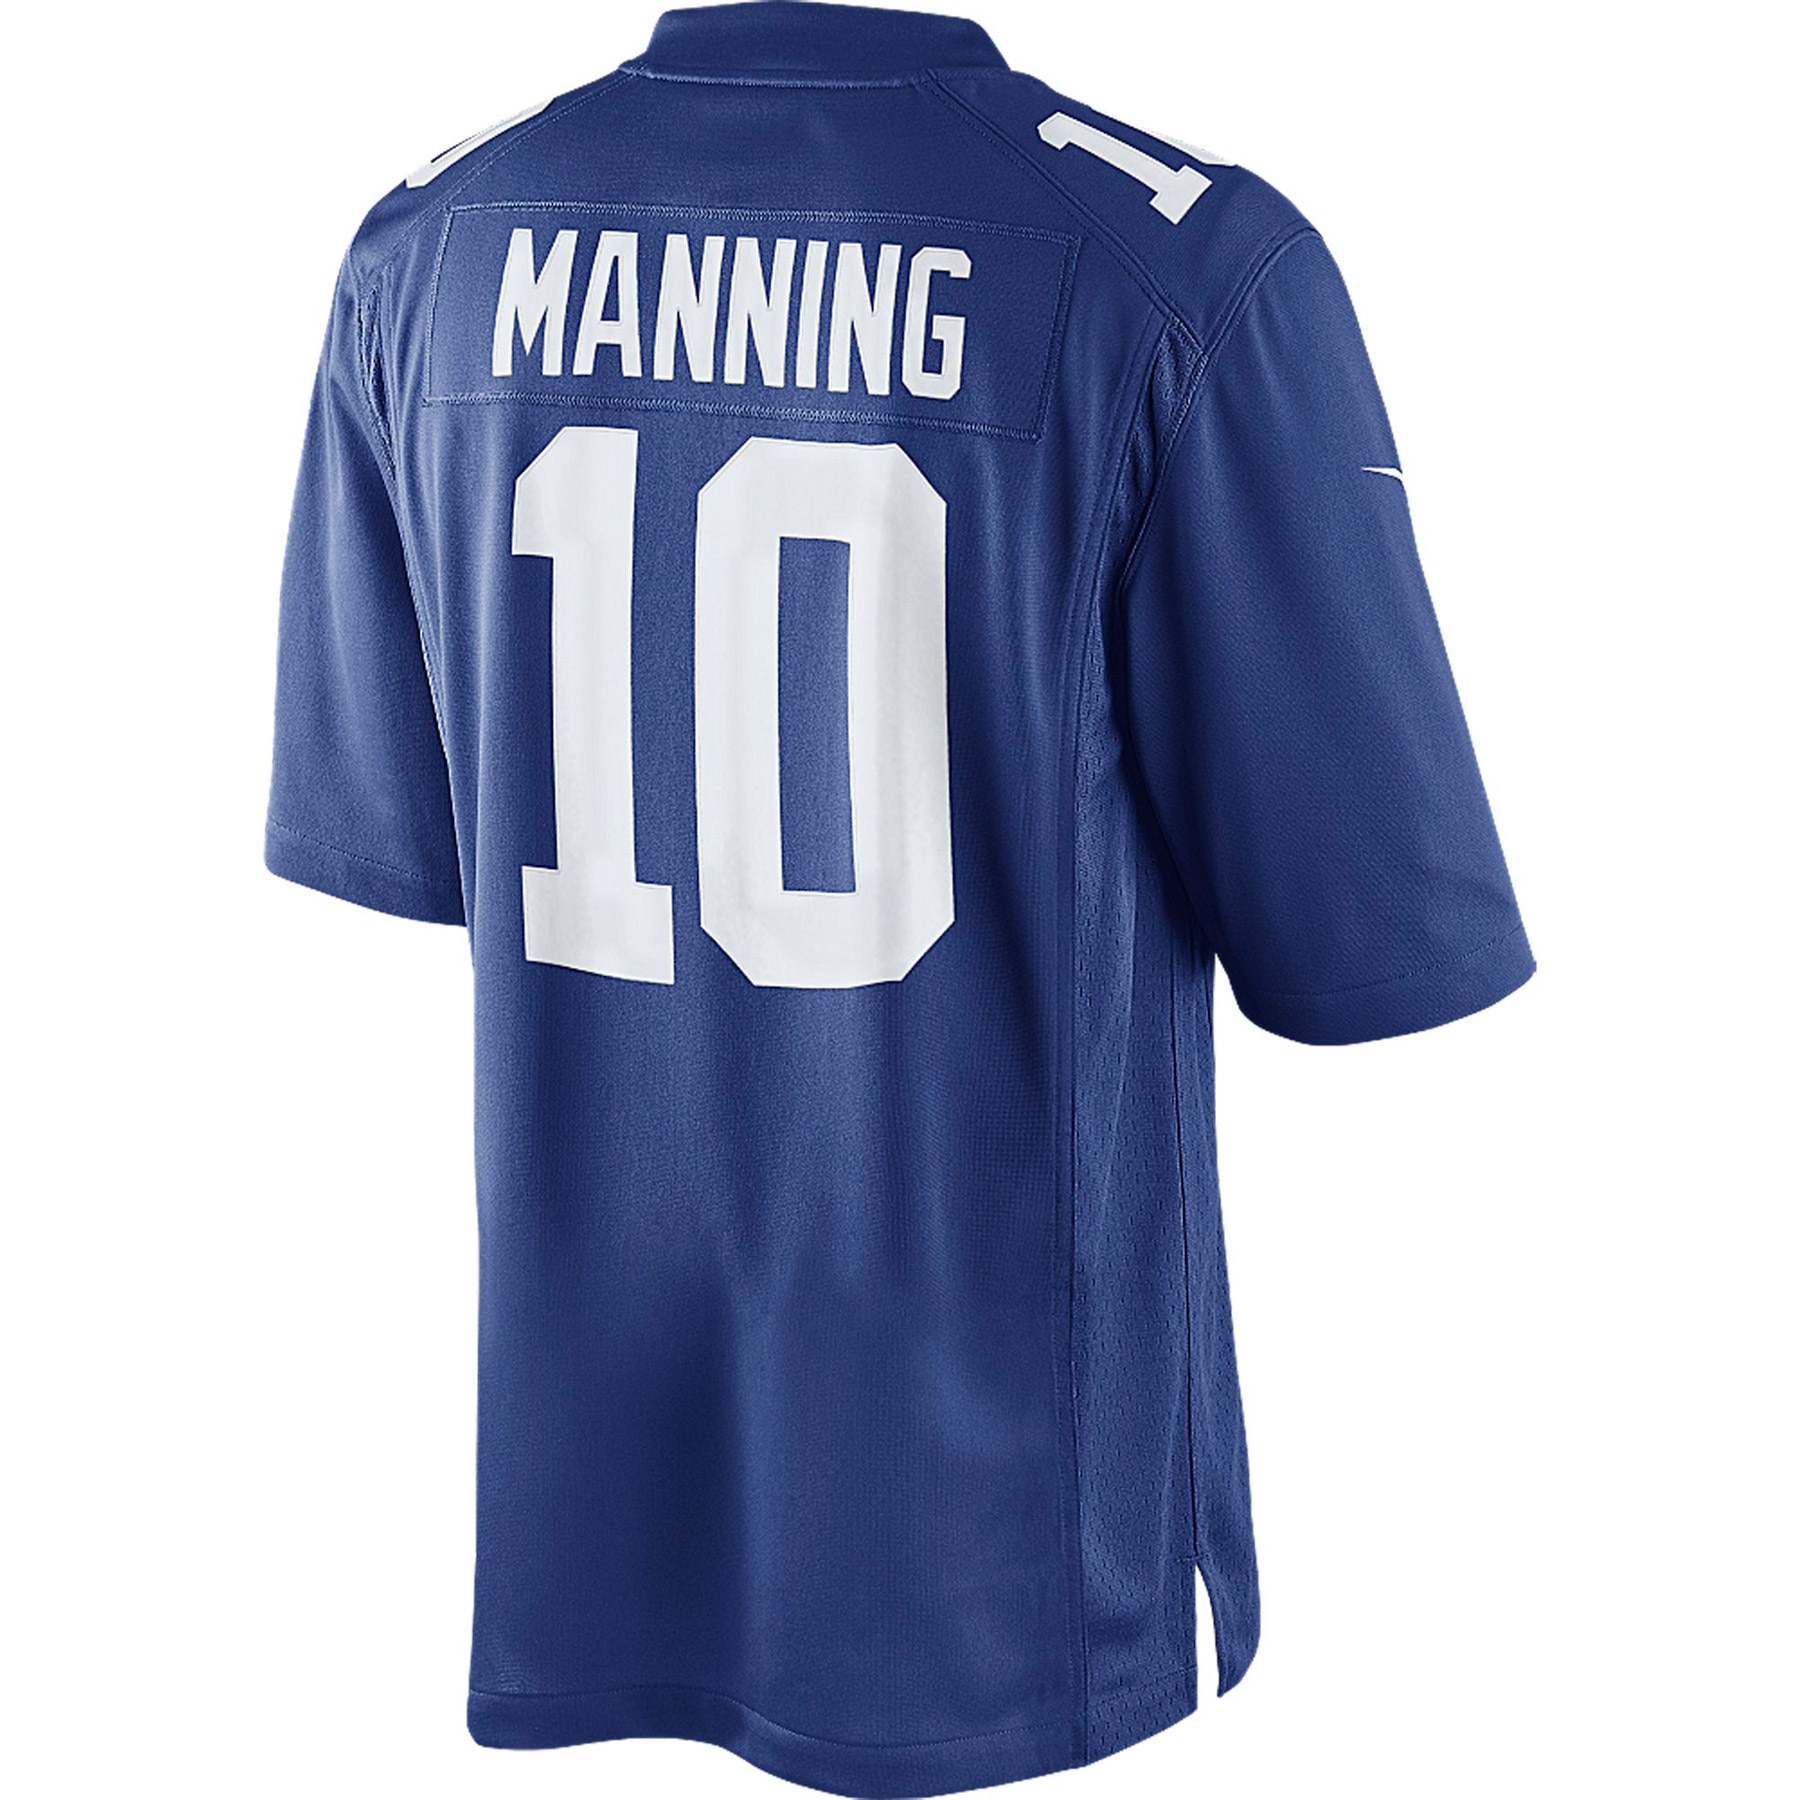 eli manning jersey number